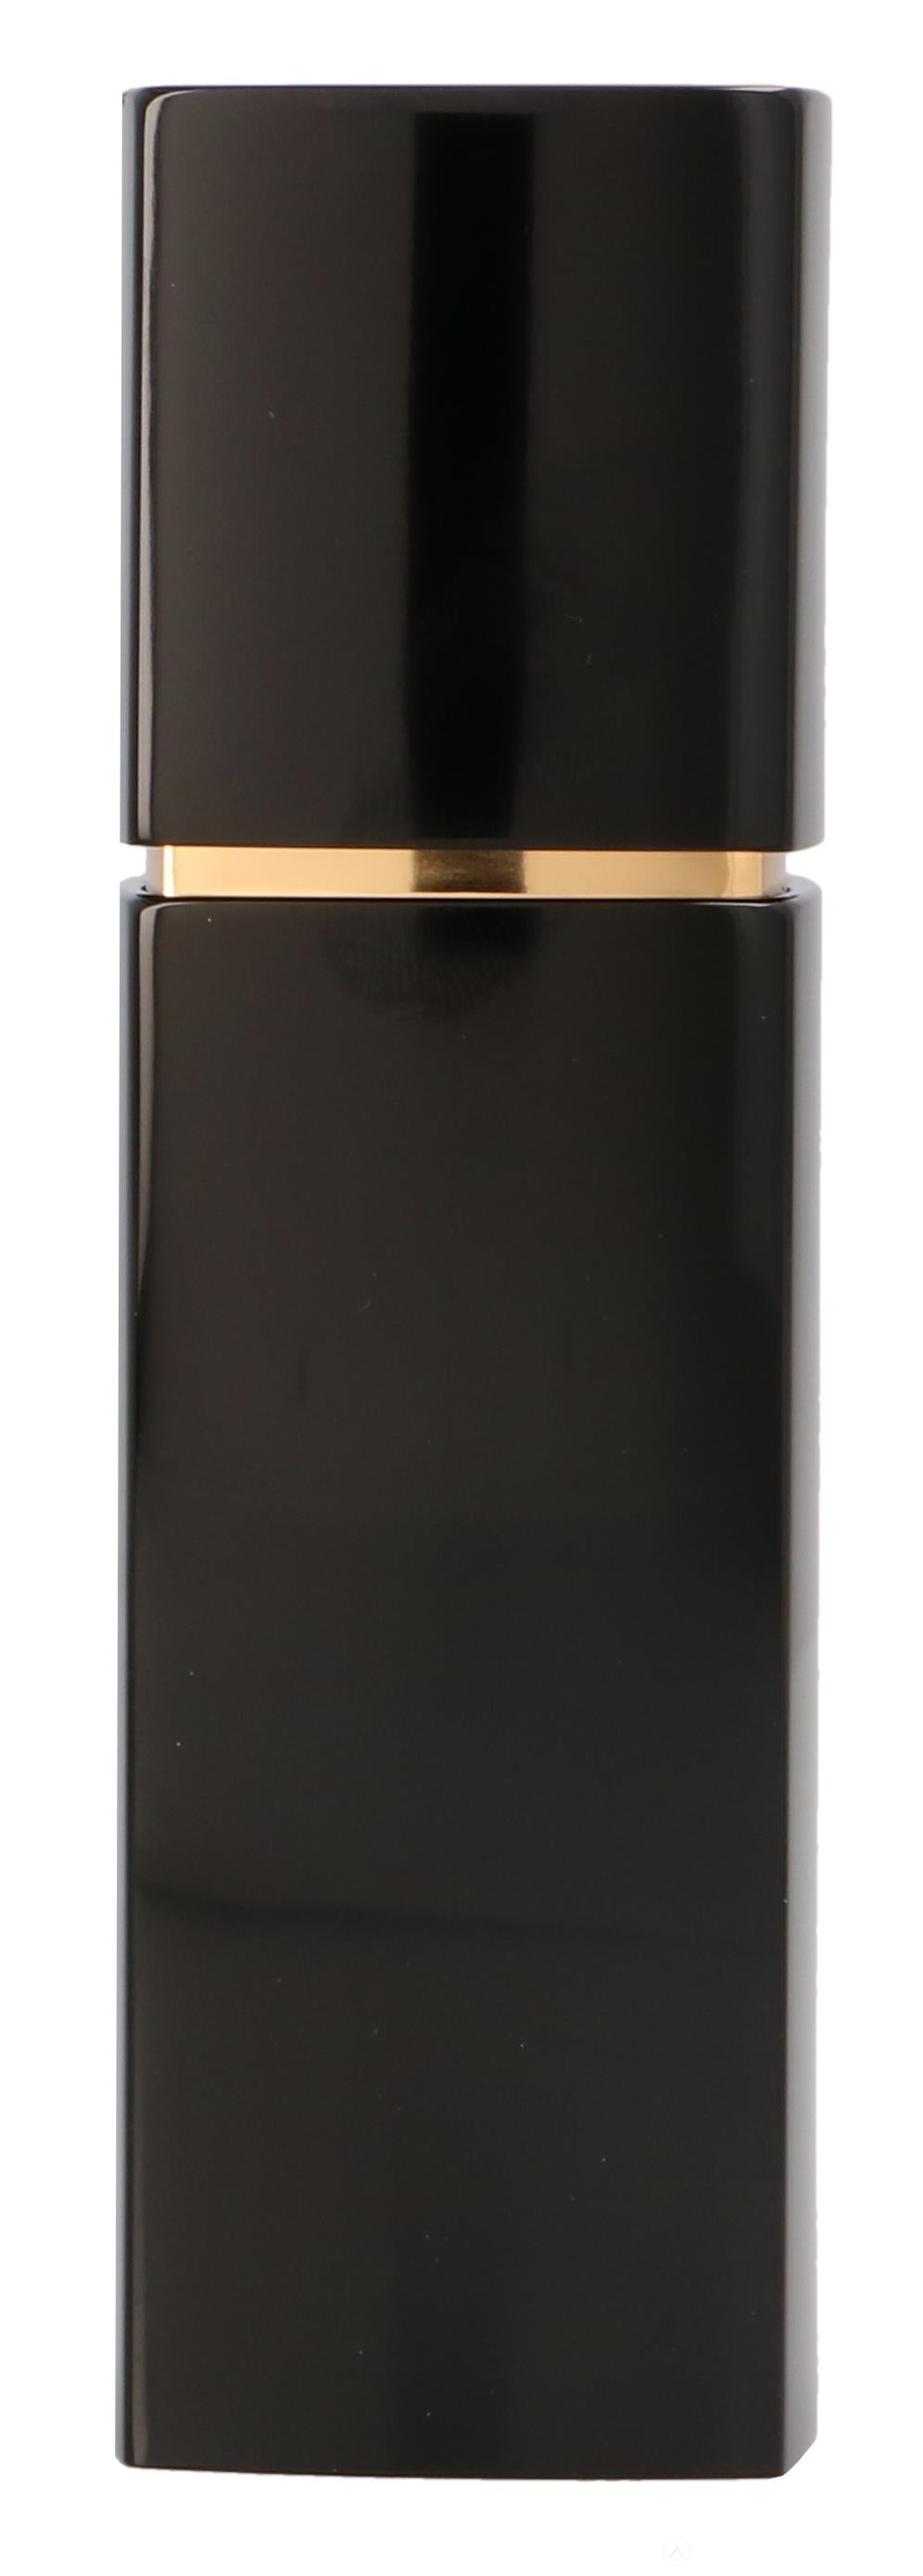 Chanel N°5 Eau de Parfum Refillable 60 ml - Atlas Parfums